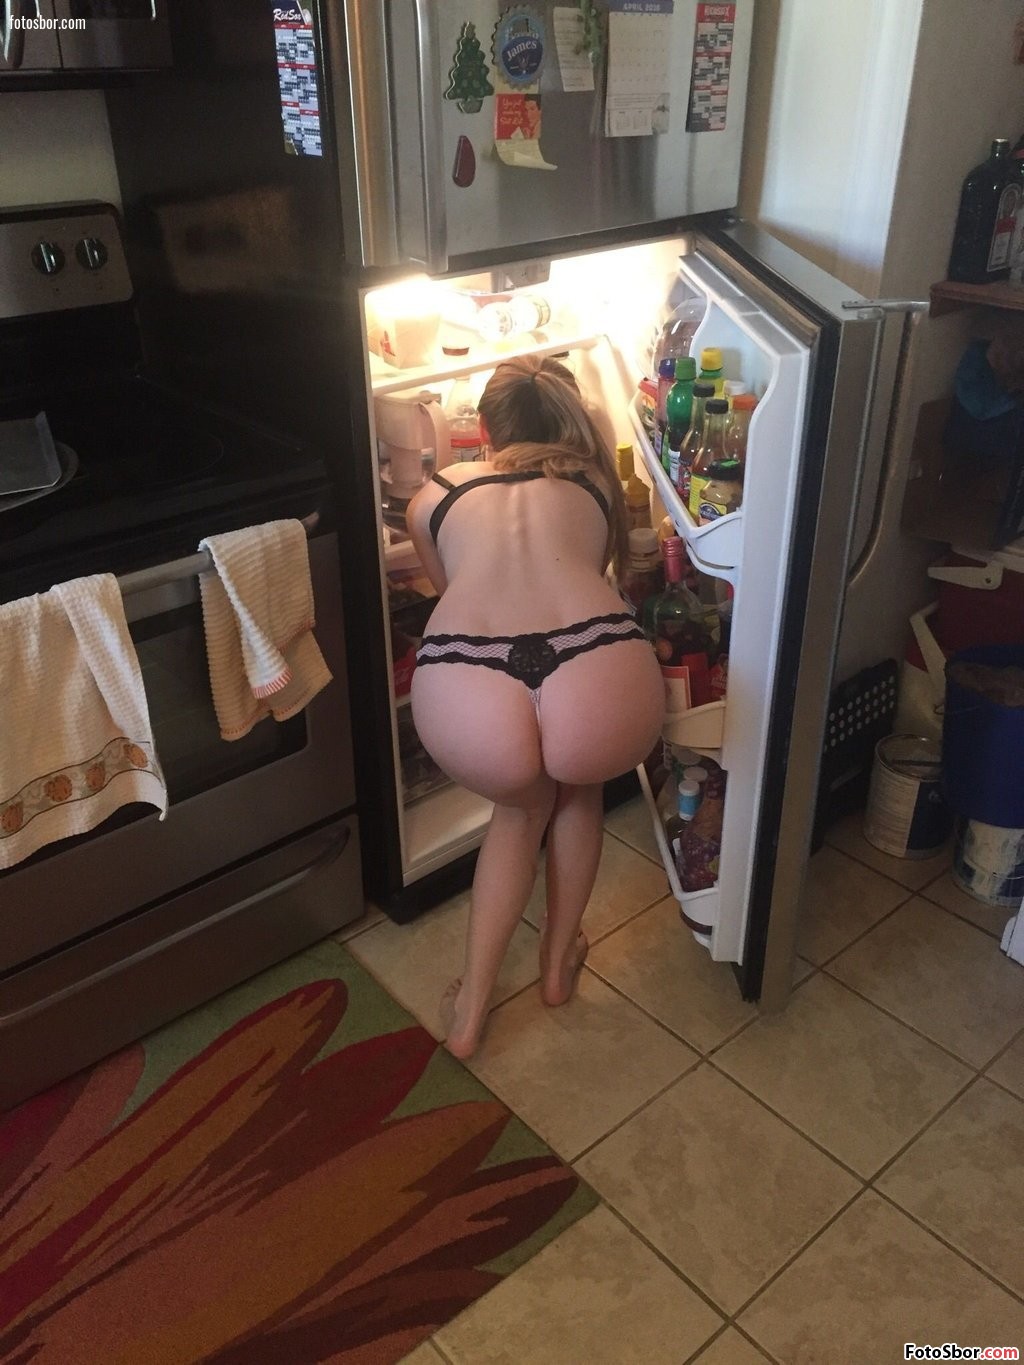 Порно фото В нижнем белье готовит обед смотреть бесплатно